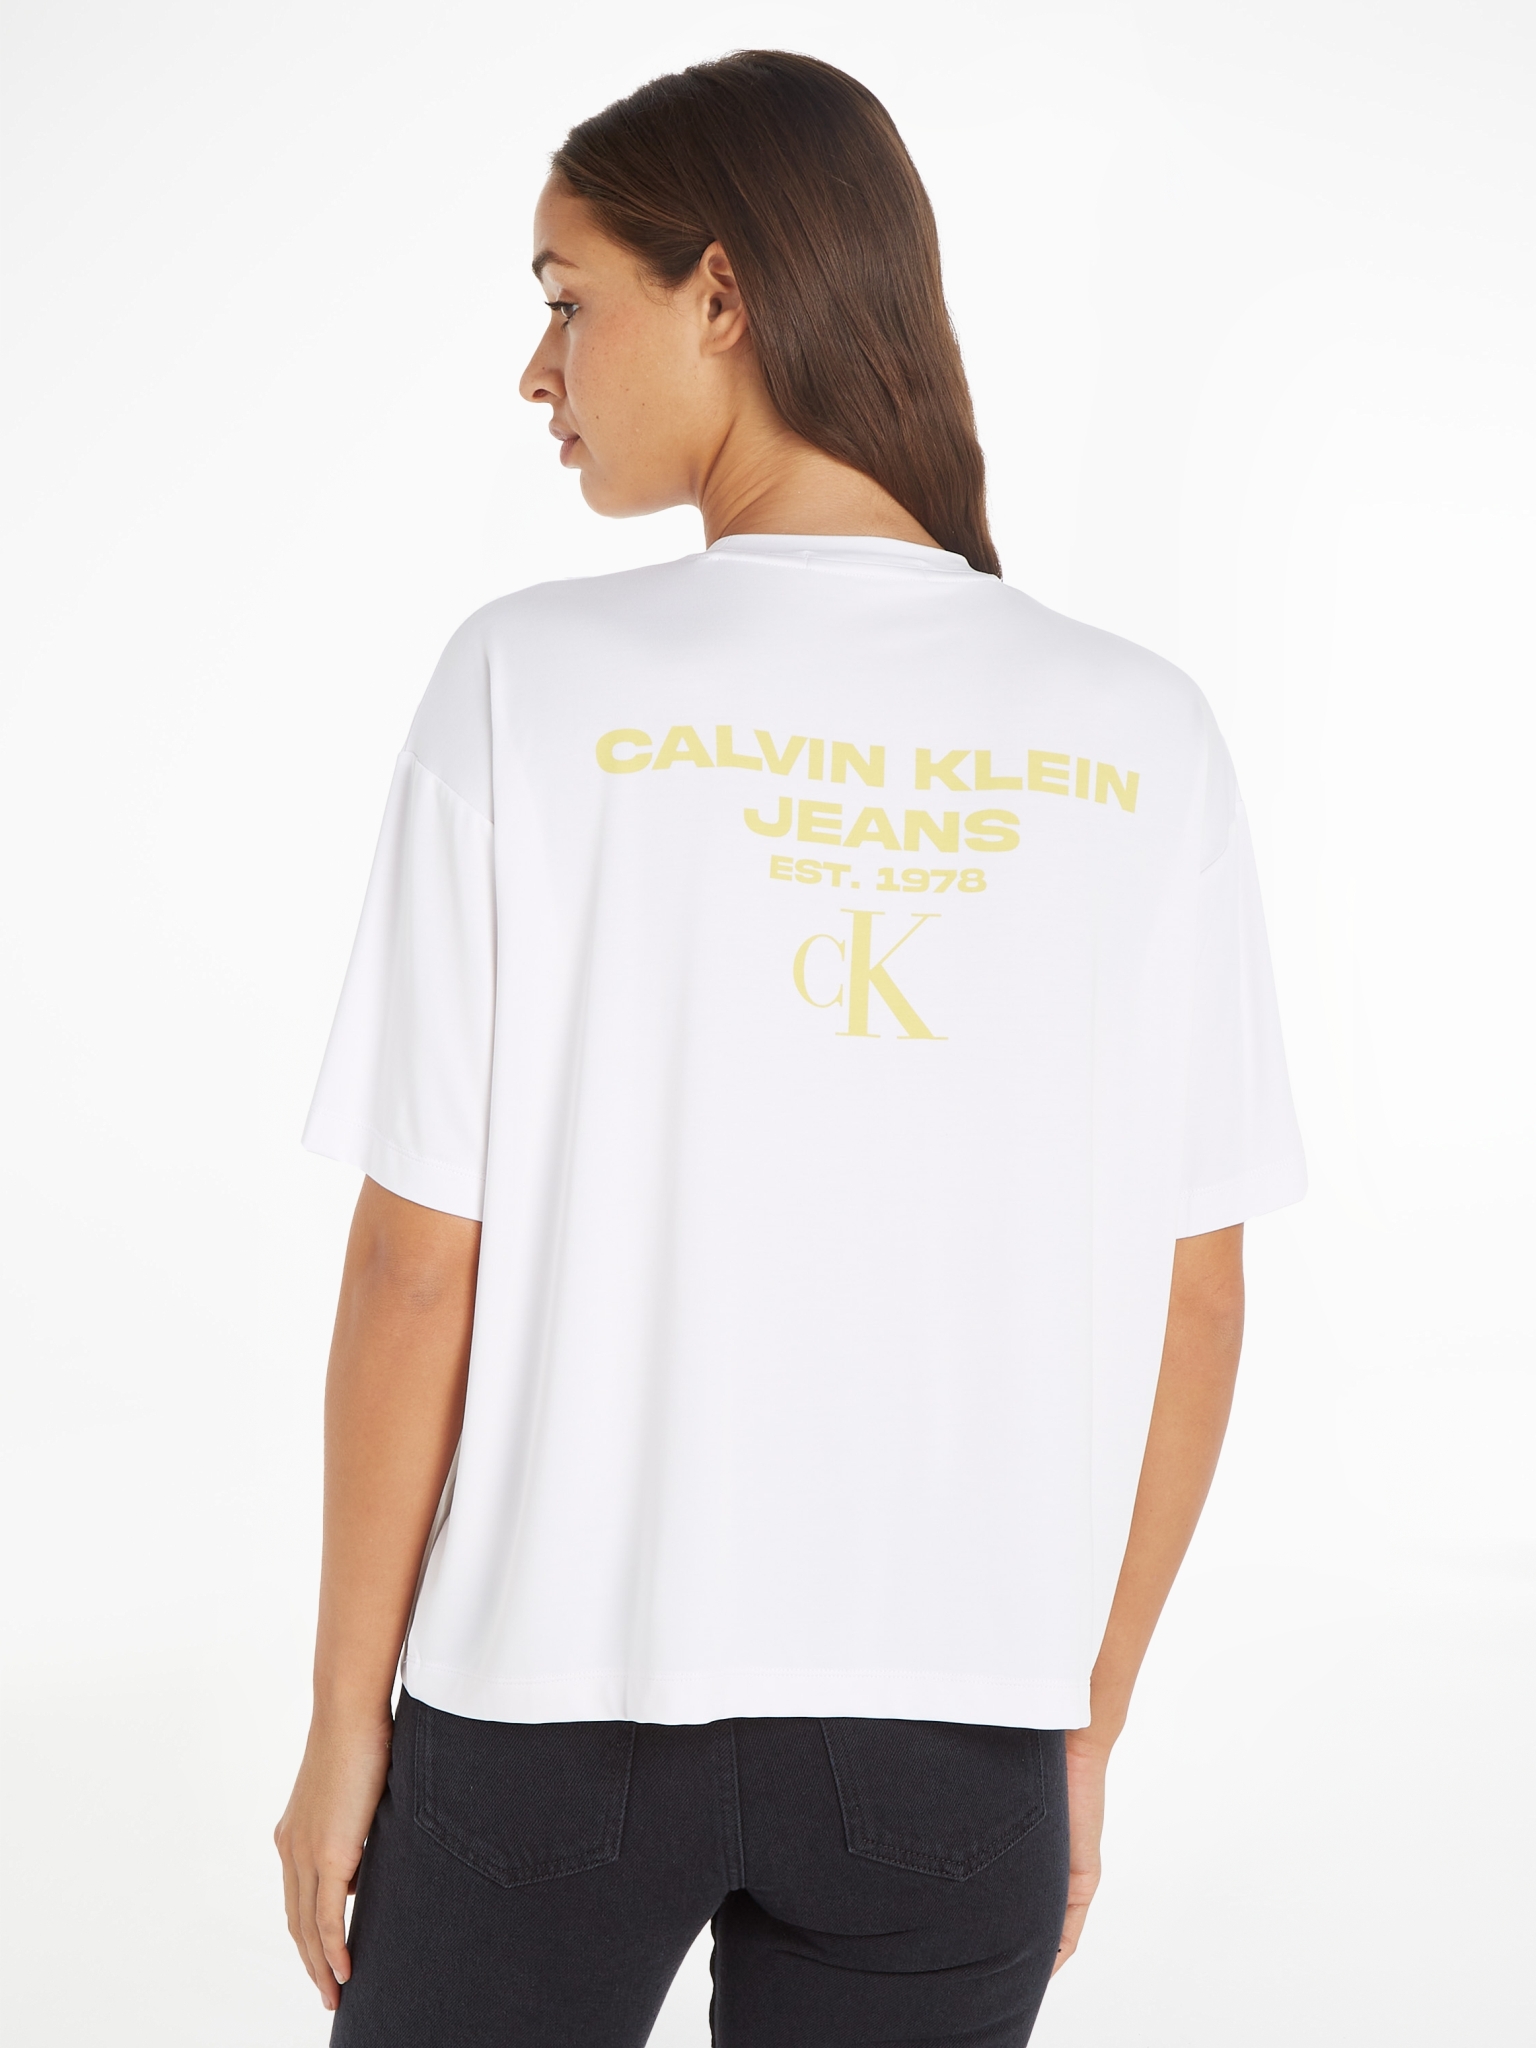 CALVIN KLEIN JEANS T-Shirt mit Print am Rücken 10704108